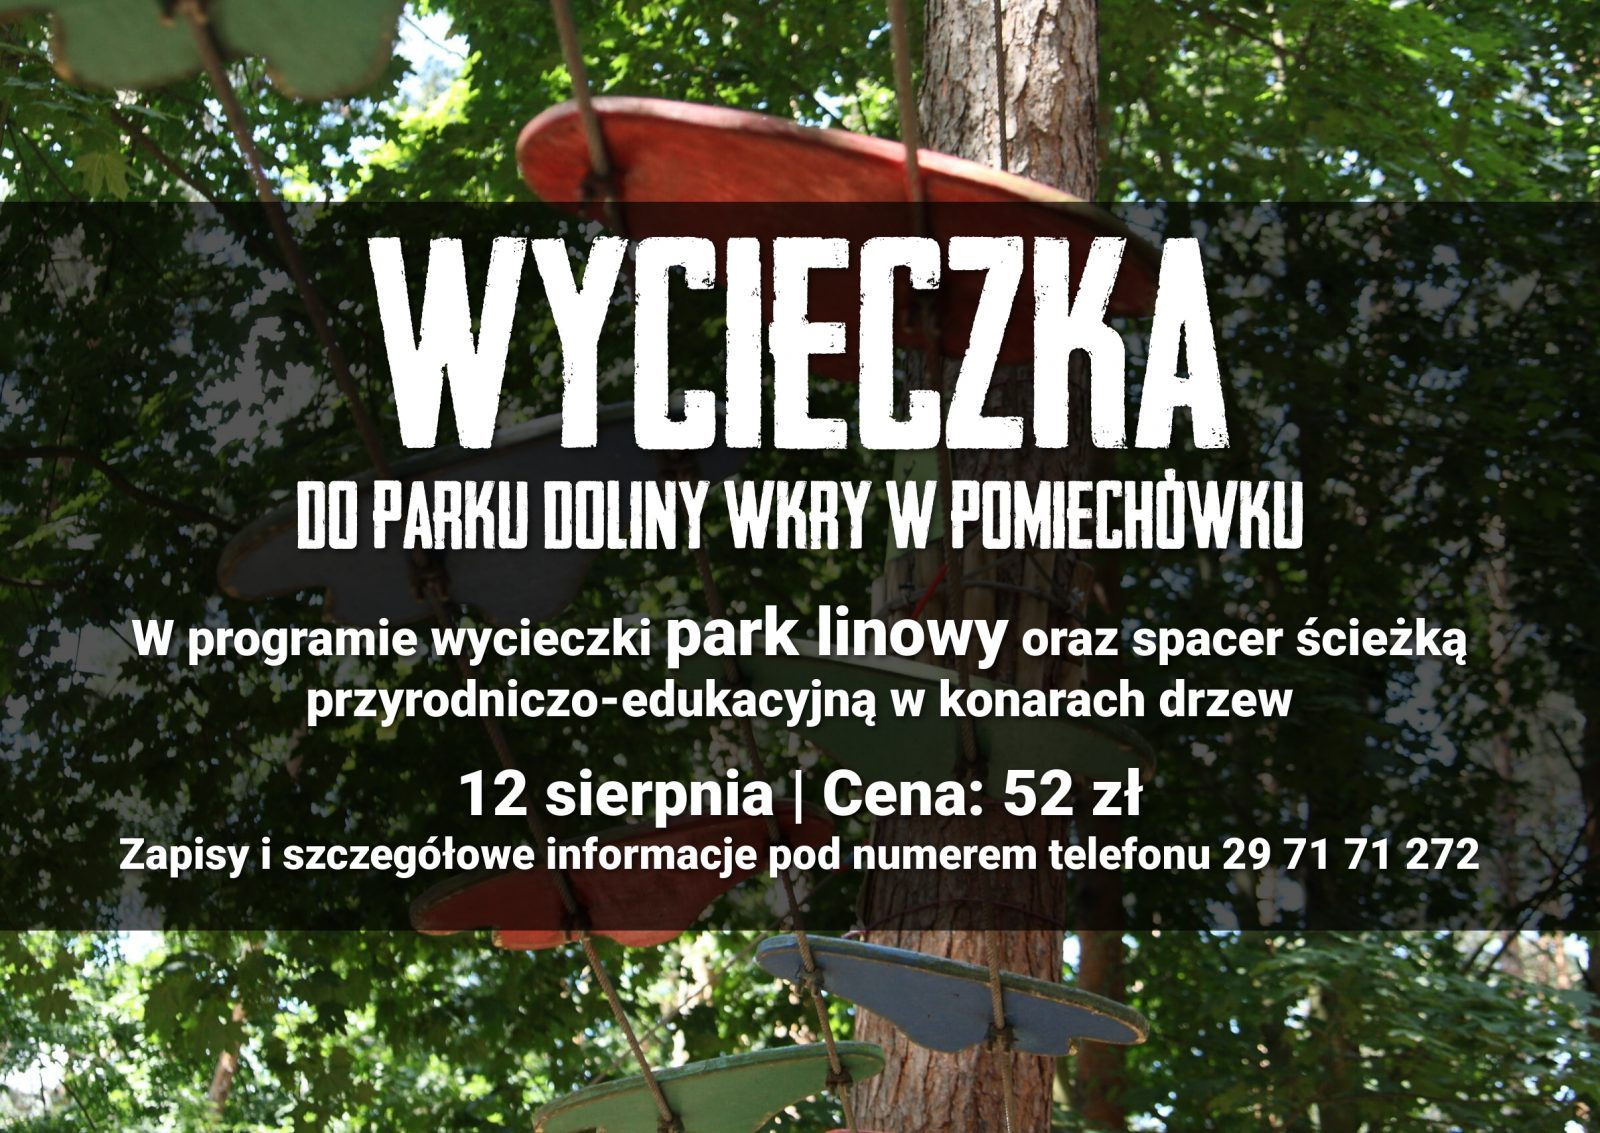 Plakat. Wycieczki do parku linowego w Pomiechówku. 12 sierpnia koszt 52 zł